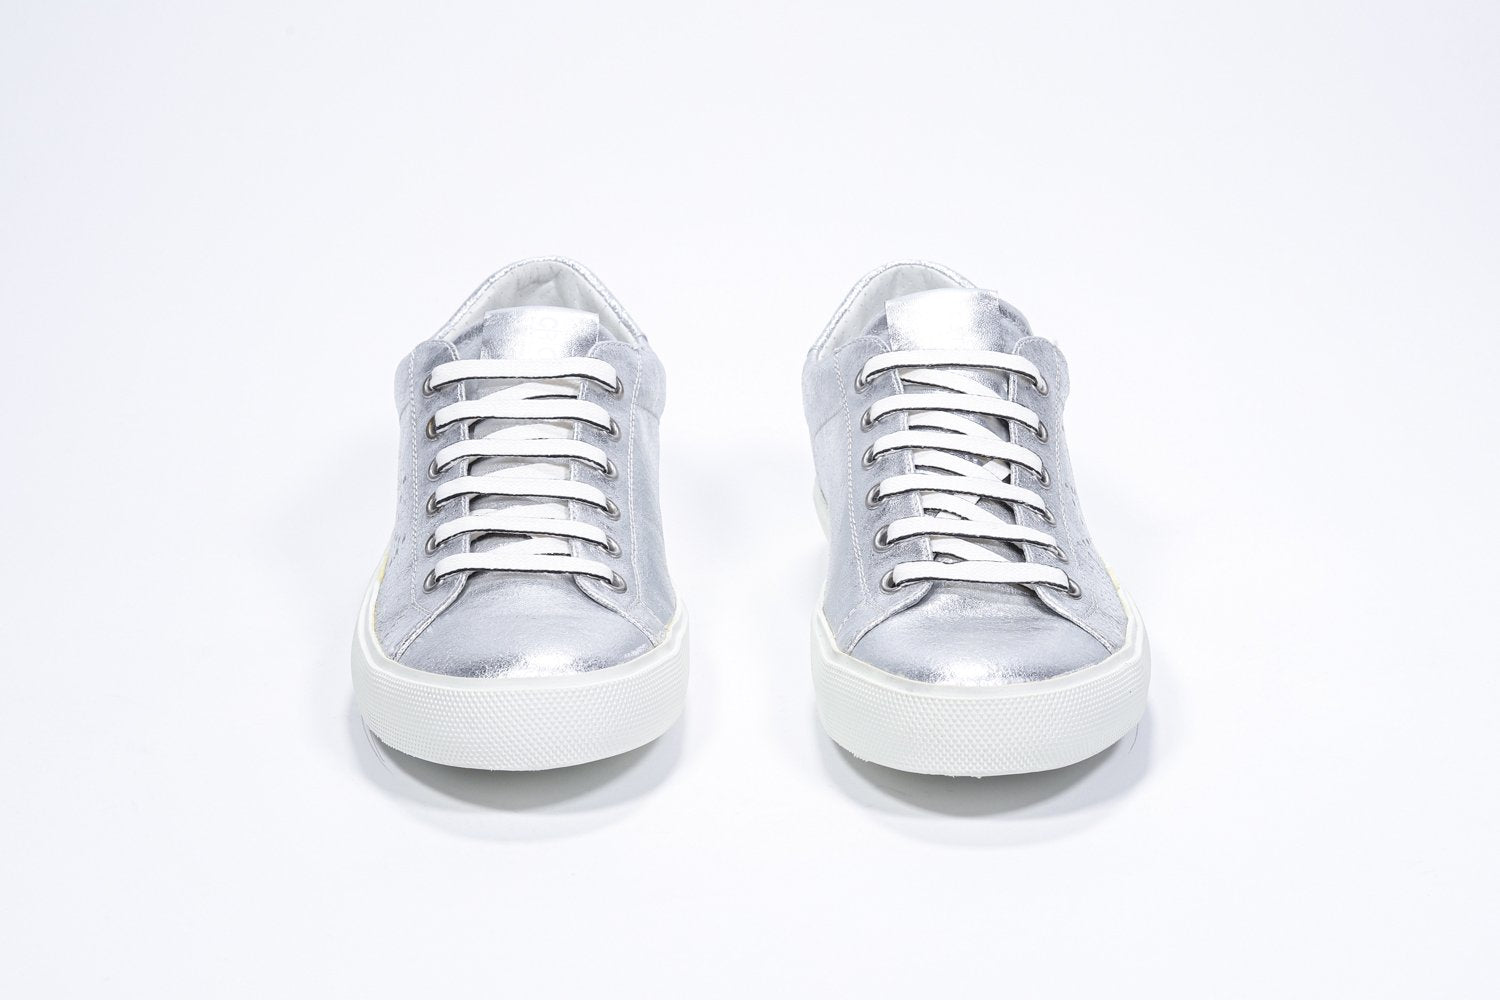 Vista frontale di BASSE argento sneaker con logo della corona traforato sulla tomaia. Tomaia in pelle metallizzata e suola in gomma bianca.